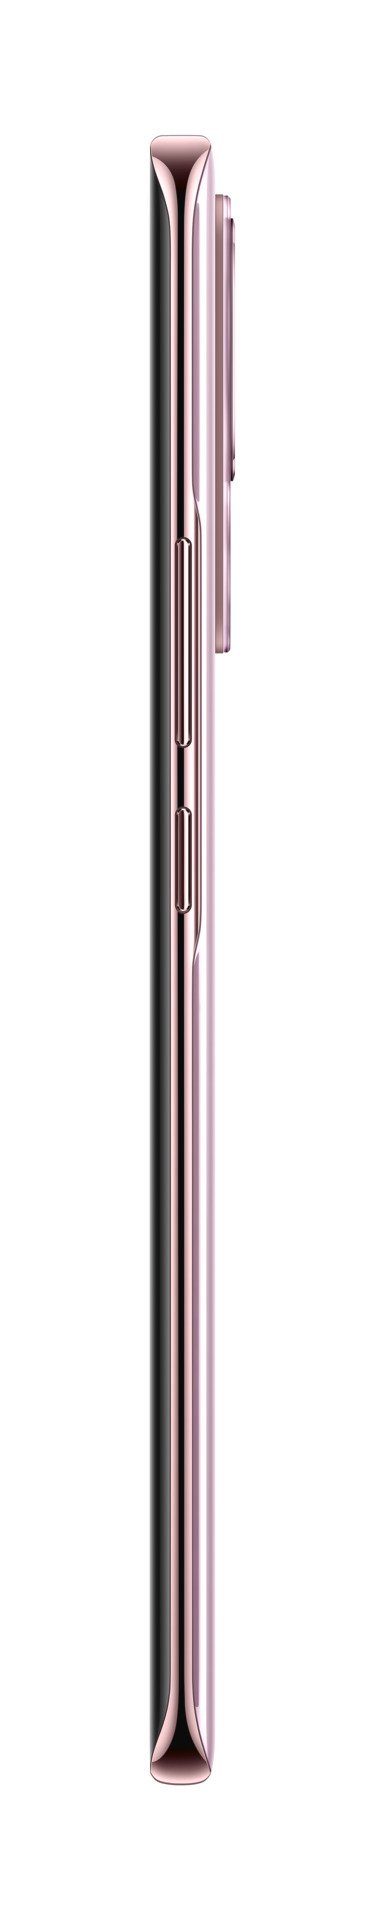 MP Xiaomi cm/6,55 8GB+128GB Pink 128 Smartphone Lite GB Kamera) Zoll, 13 Speicherplatz, 50 (16,65